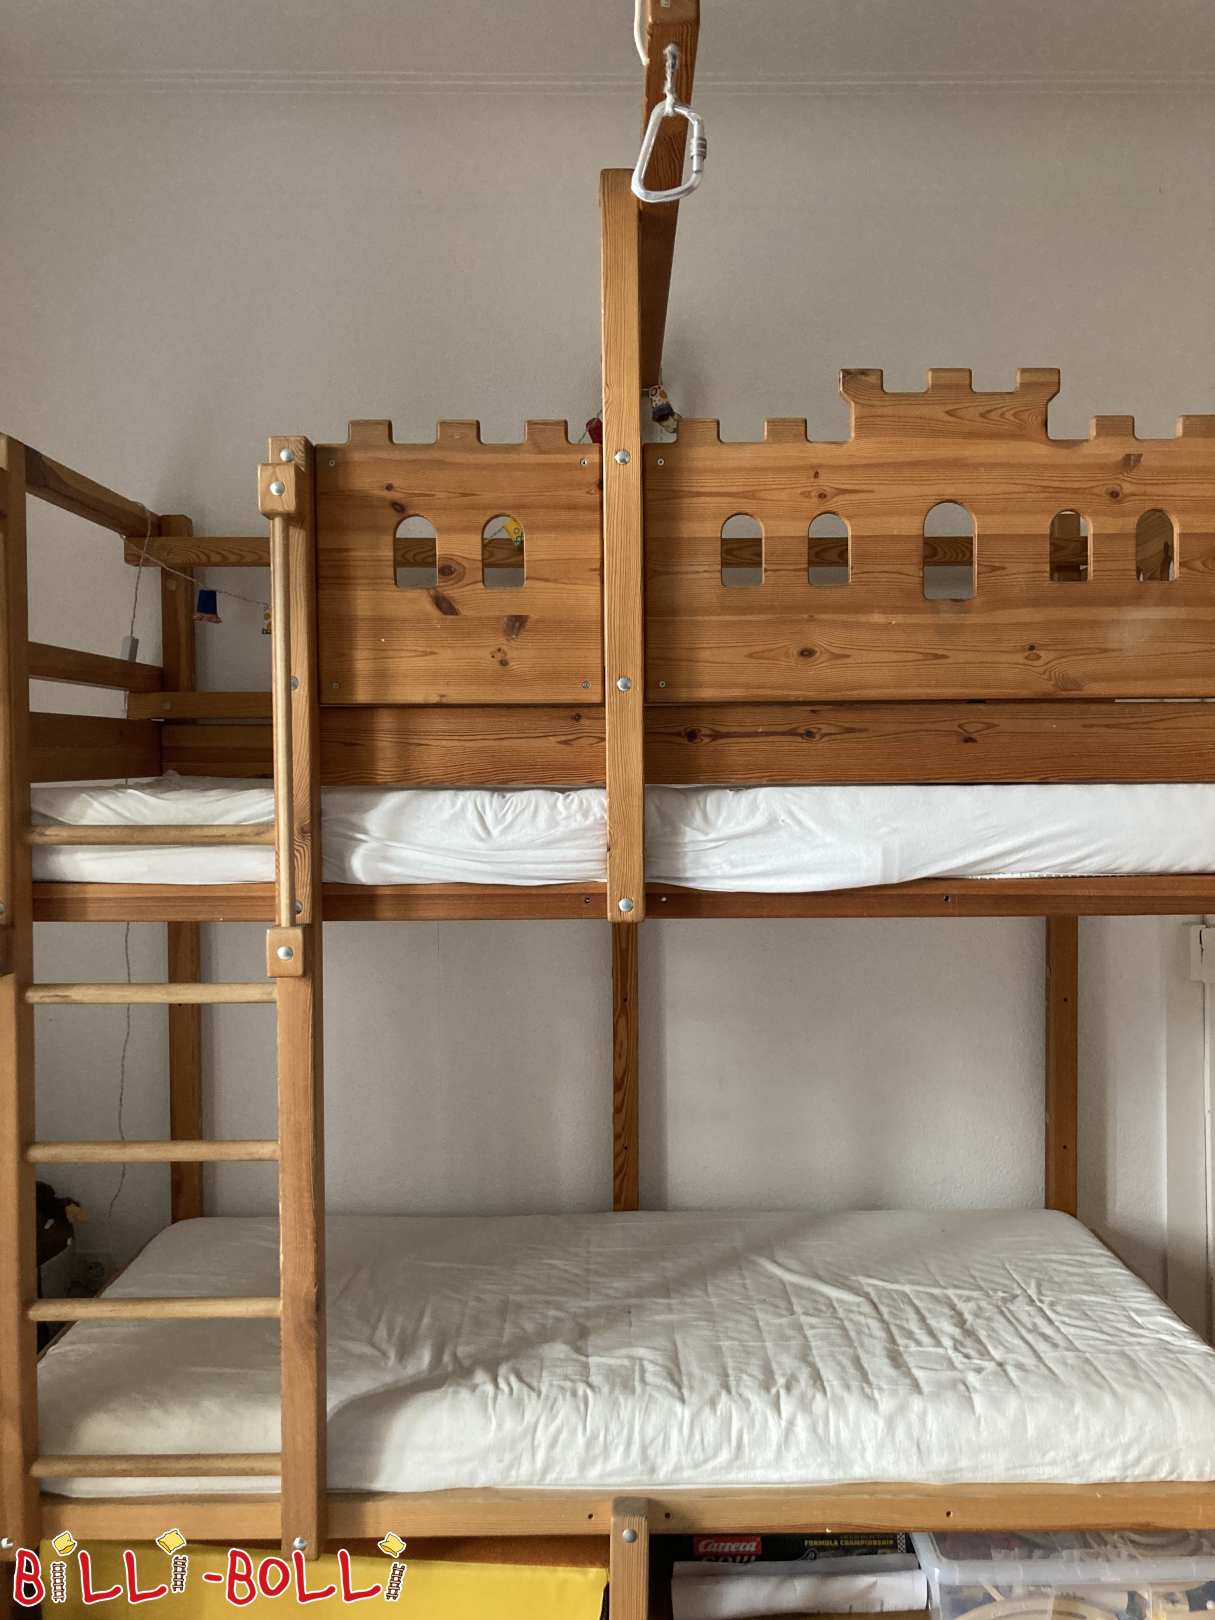 مجموعة التحويل: سرير علوي ينمو مع الطفل ليصبح سريرا بطابقين (التصنيف: اكسسوارات/قطع تمديد مستعملة)